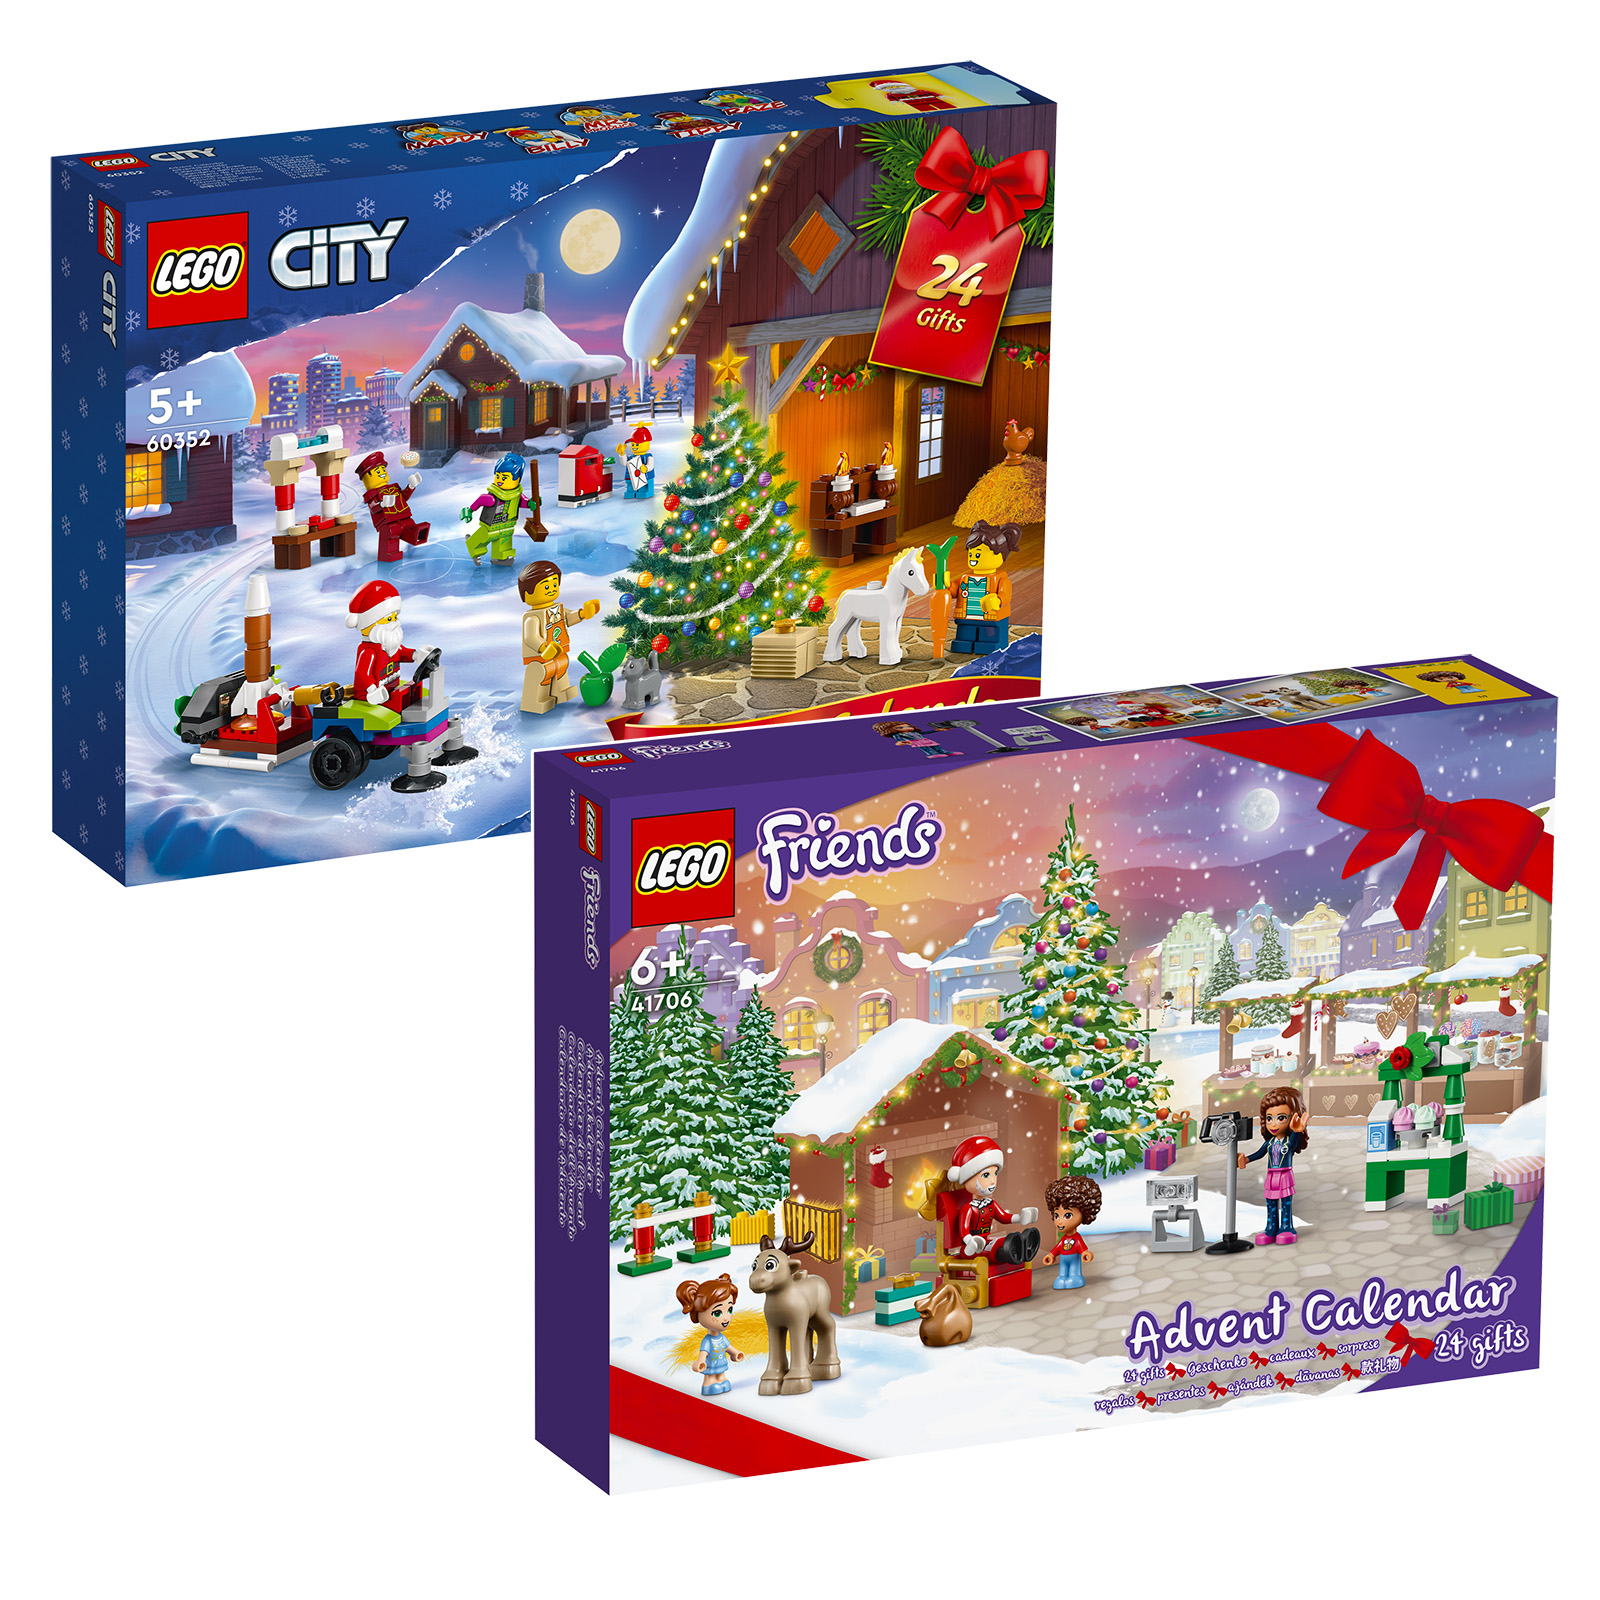 Calendare de Advent 2022 LEGO CITY & Friends: seturile sunt online în Magazin